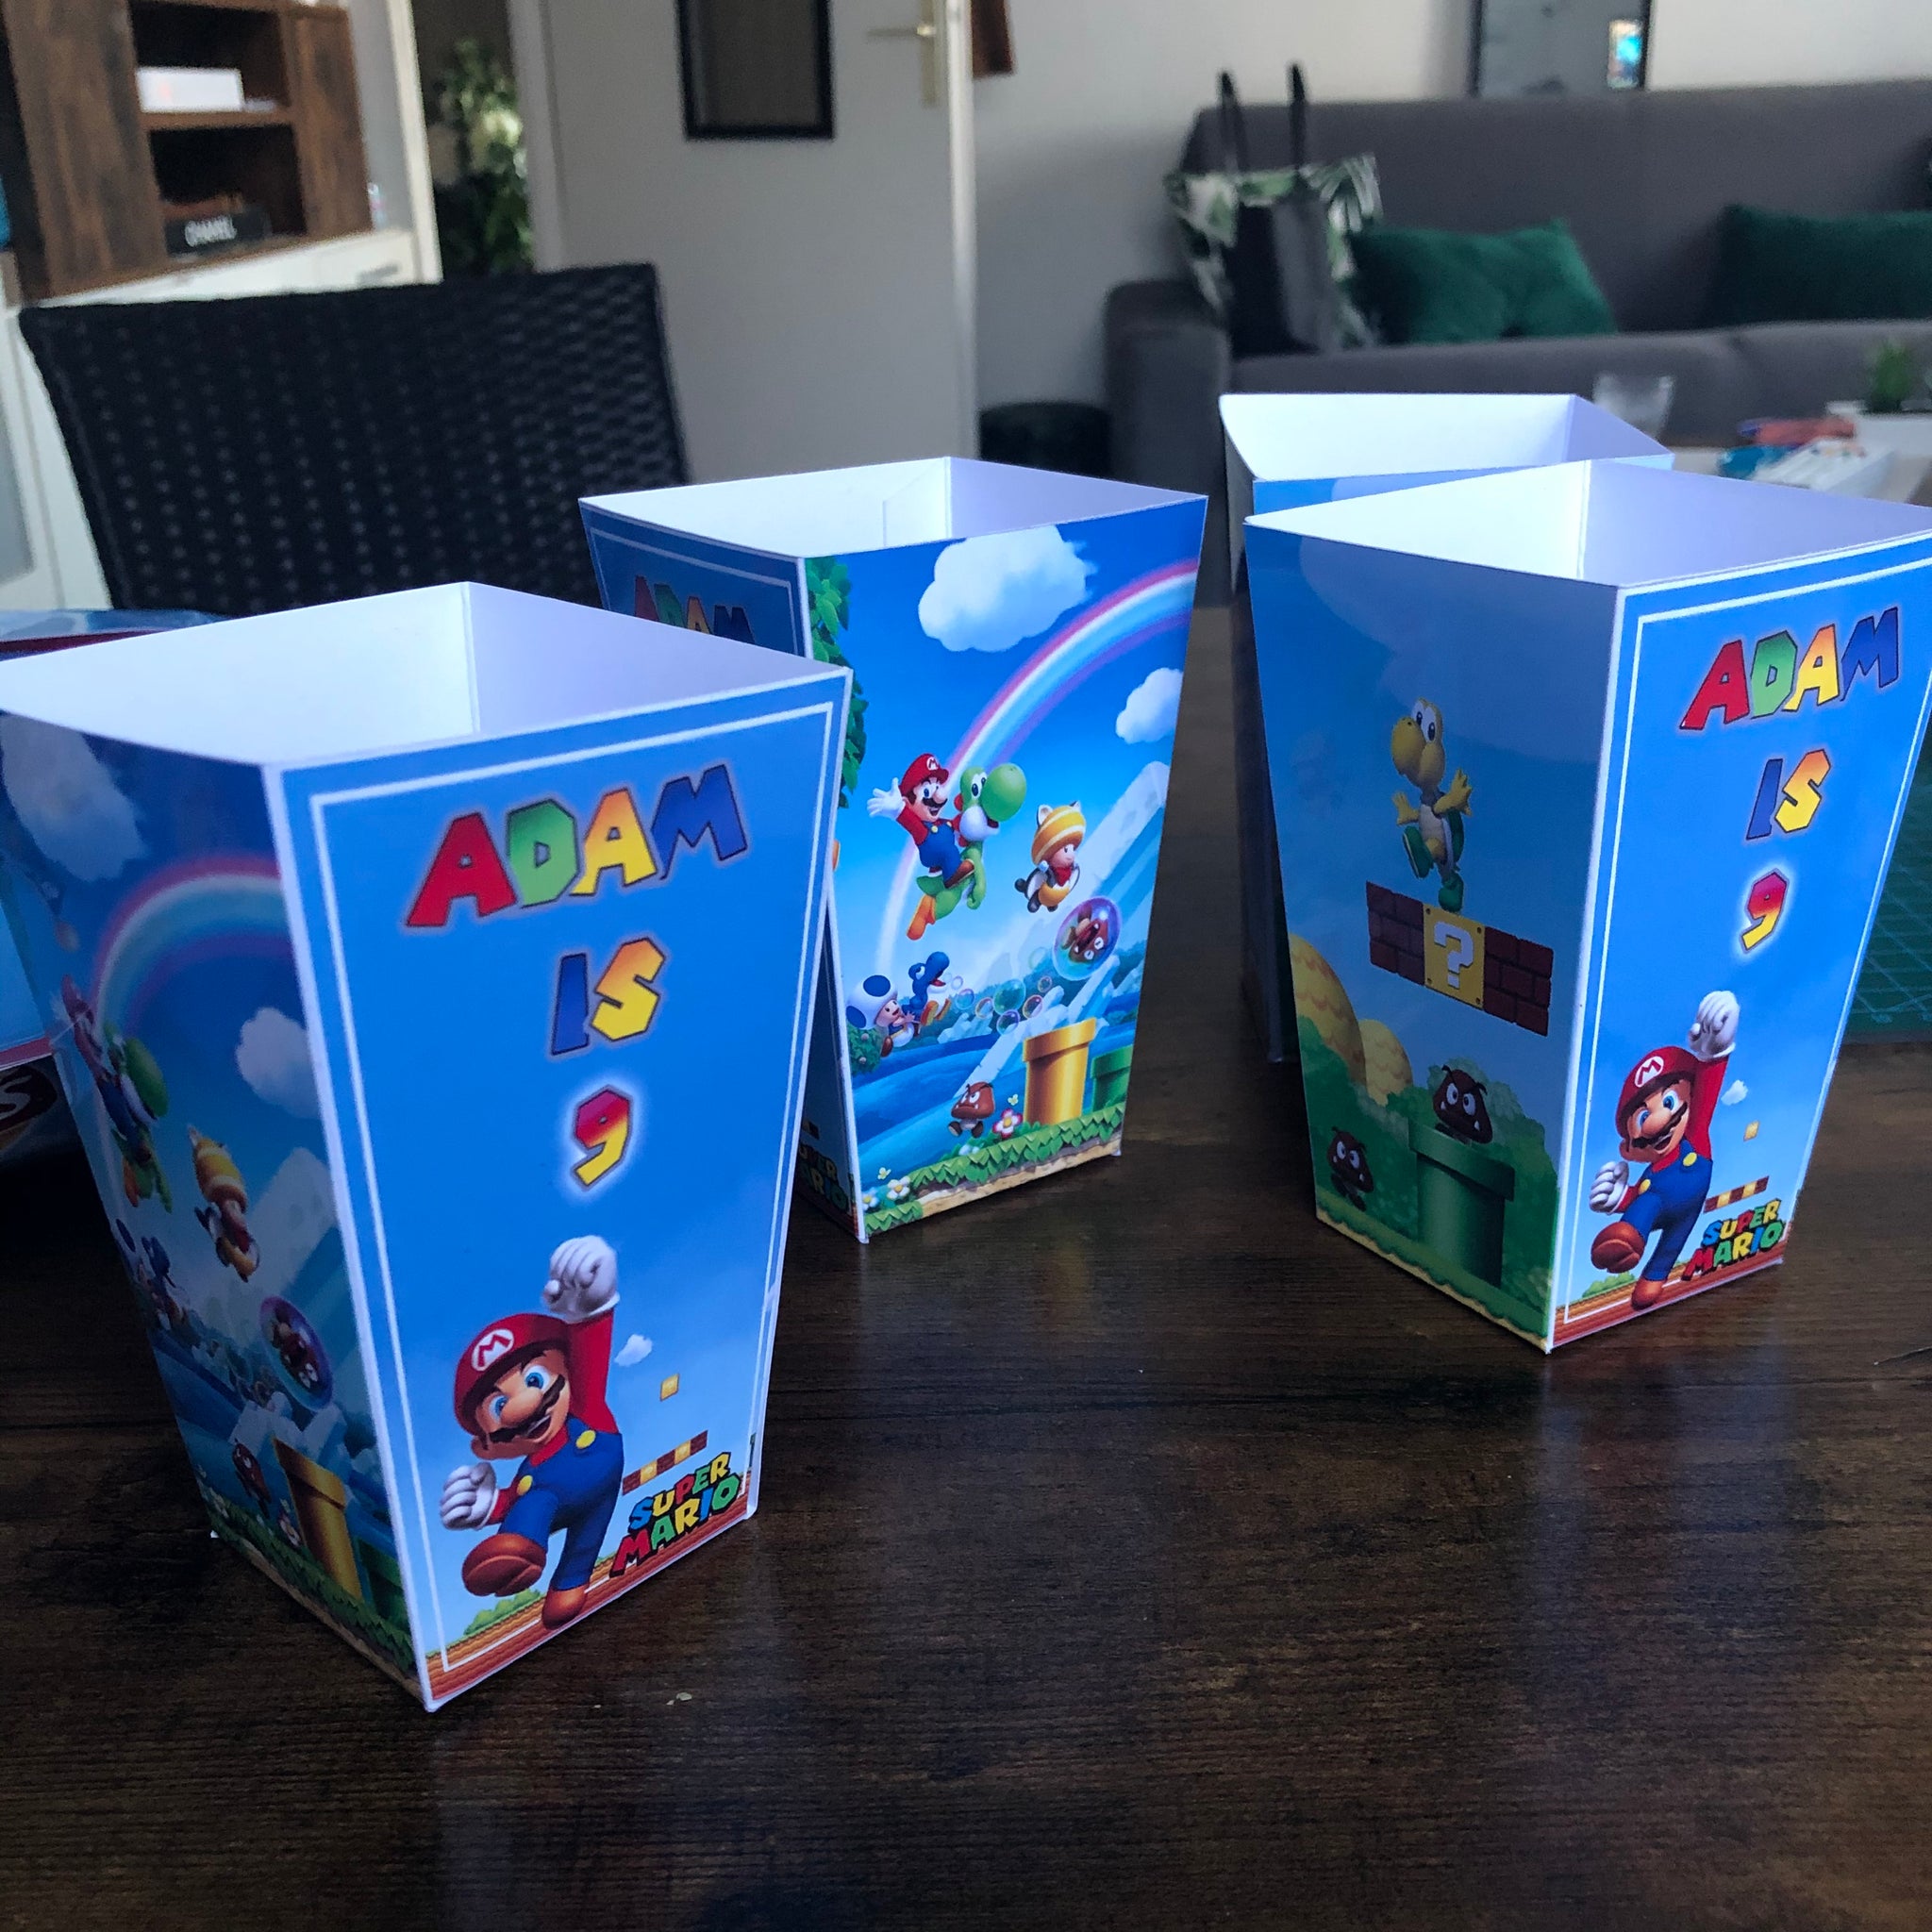 Boîte à monnaie Super Mario personnalisée, tirelire en céramique pour  enfants avec nom, décoration de chambre / chambre à coucher / chambre de  bébé, boîte dargent, économies -  France